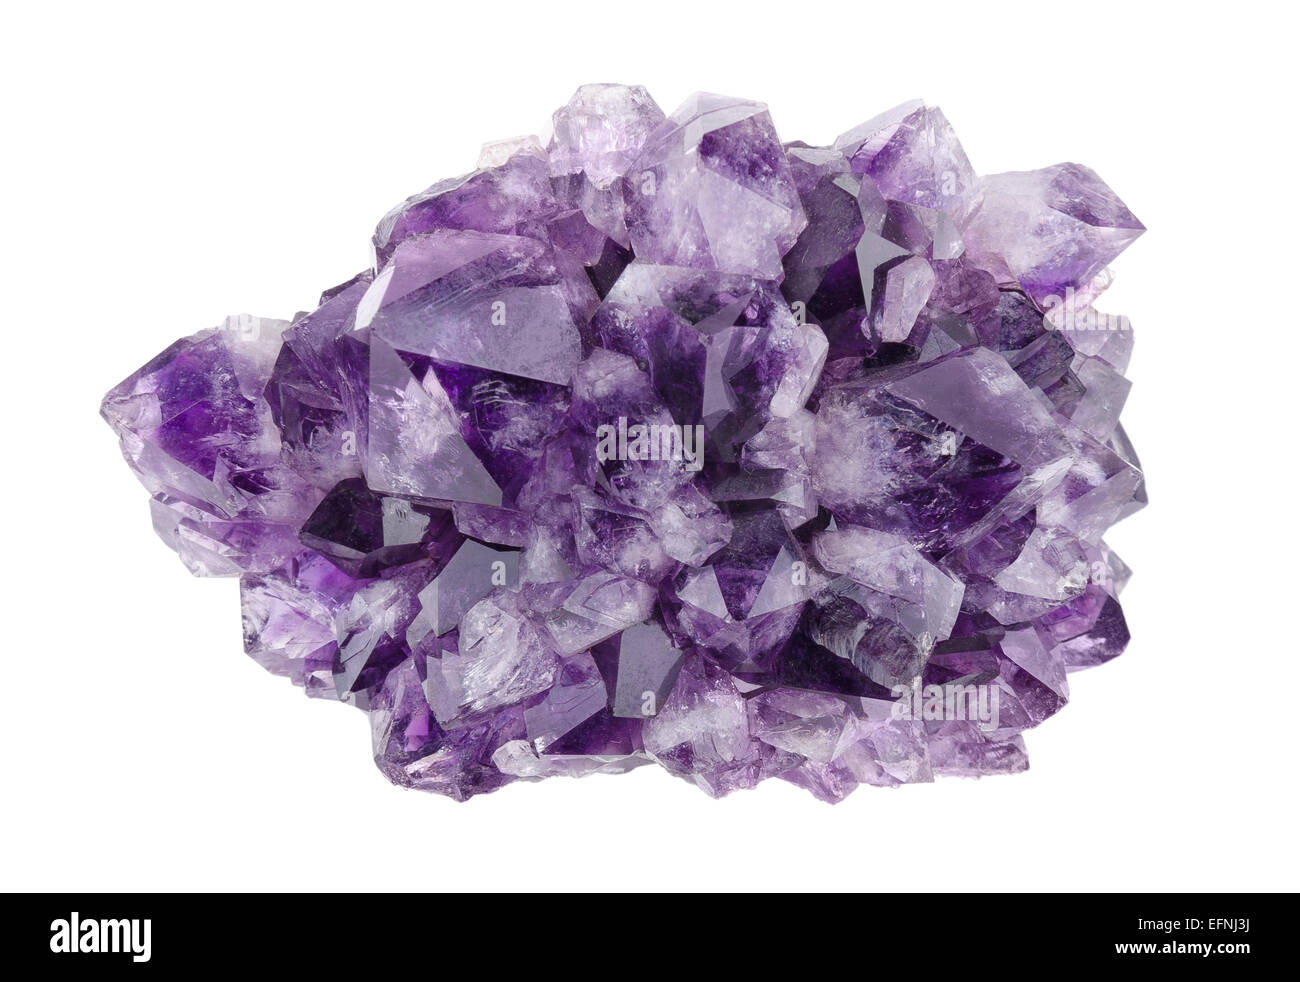 Amethyst direkt oben auf weißem Hintergrund, vielfältige violette Quarz, oft in Schmuck verwendet. Kieselsäure, Siliciumdioxid, SiO2. Stockfoto